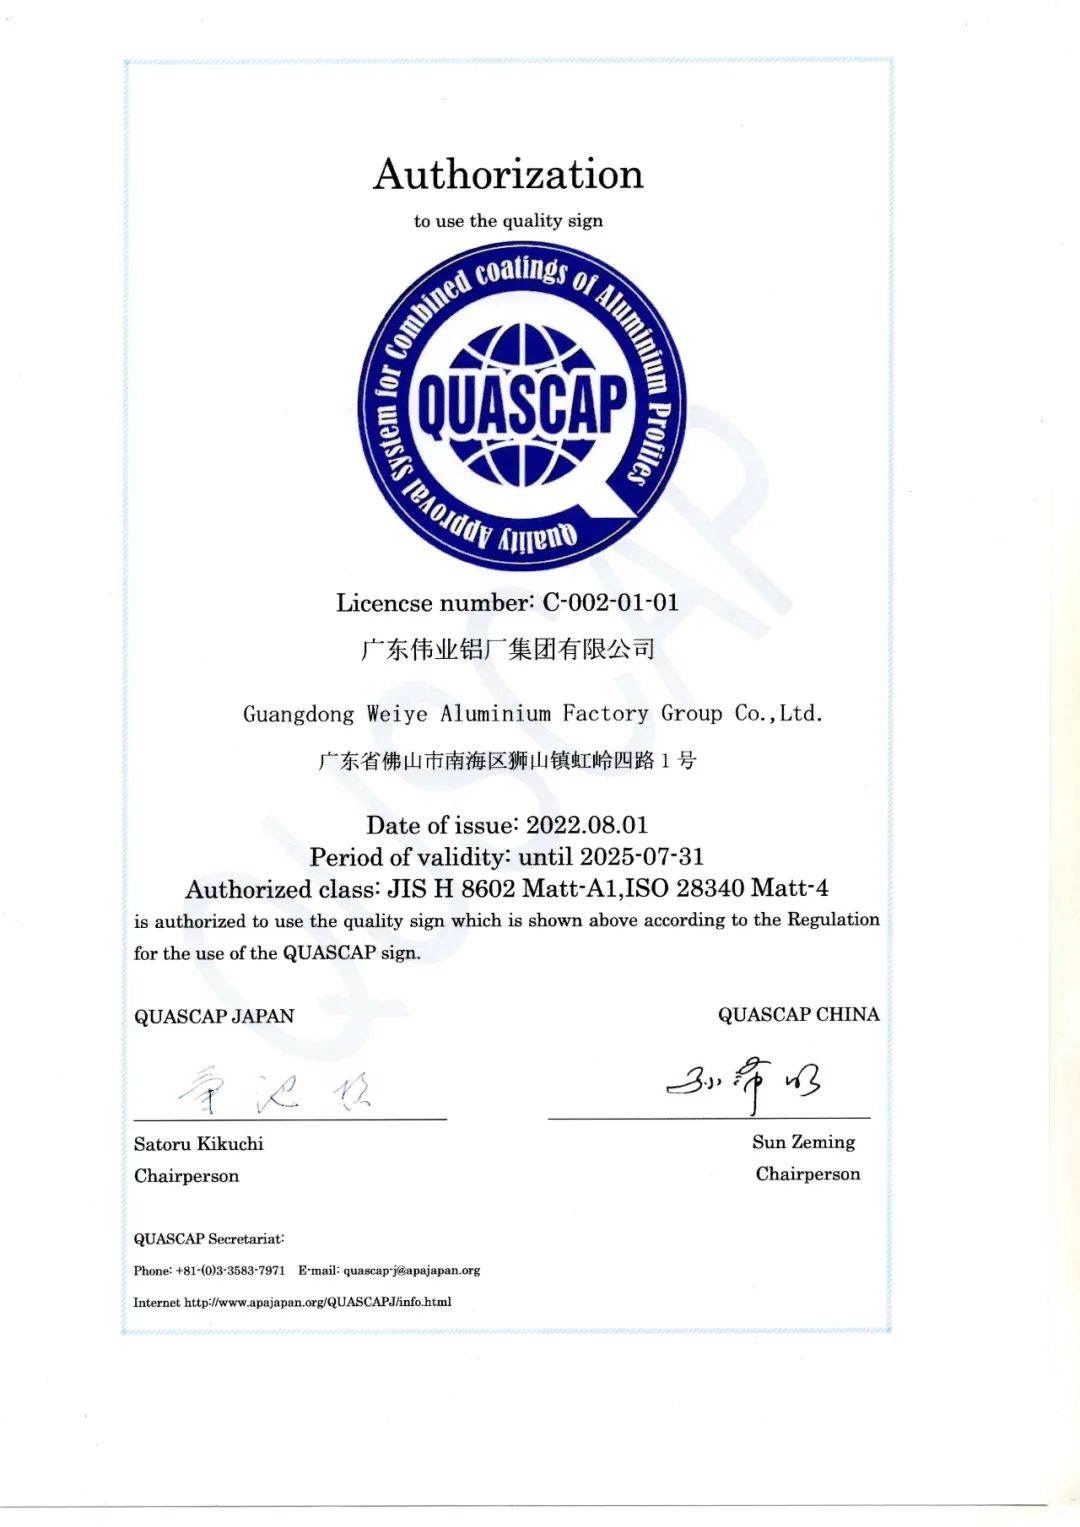 伟业铝材通过QUASCAP消光电泳A1级建材认证